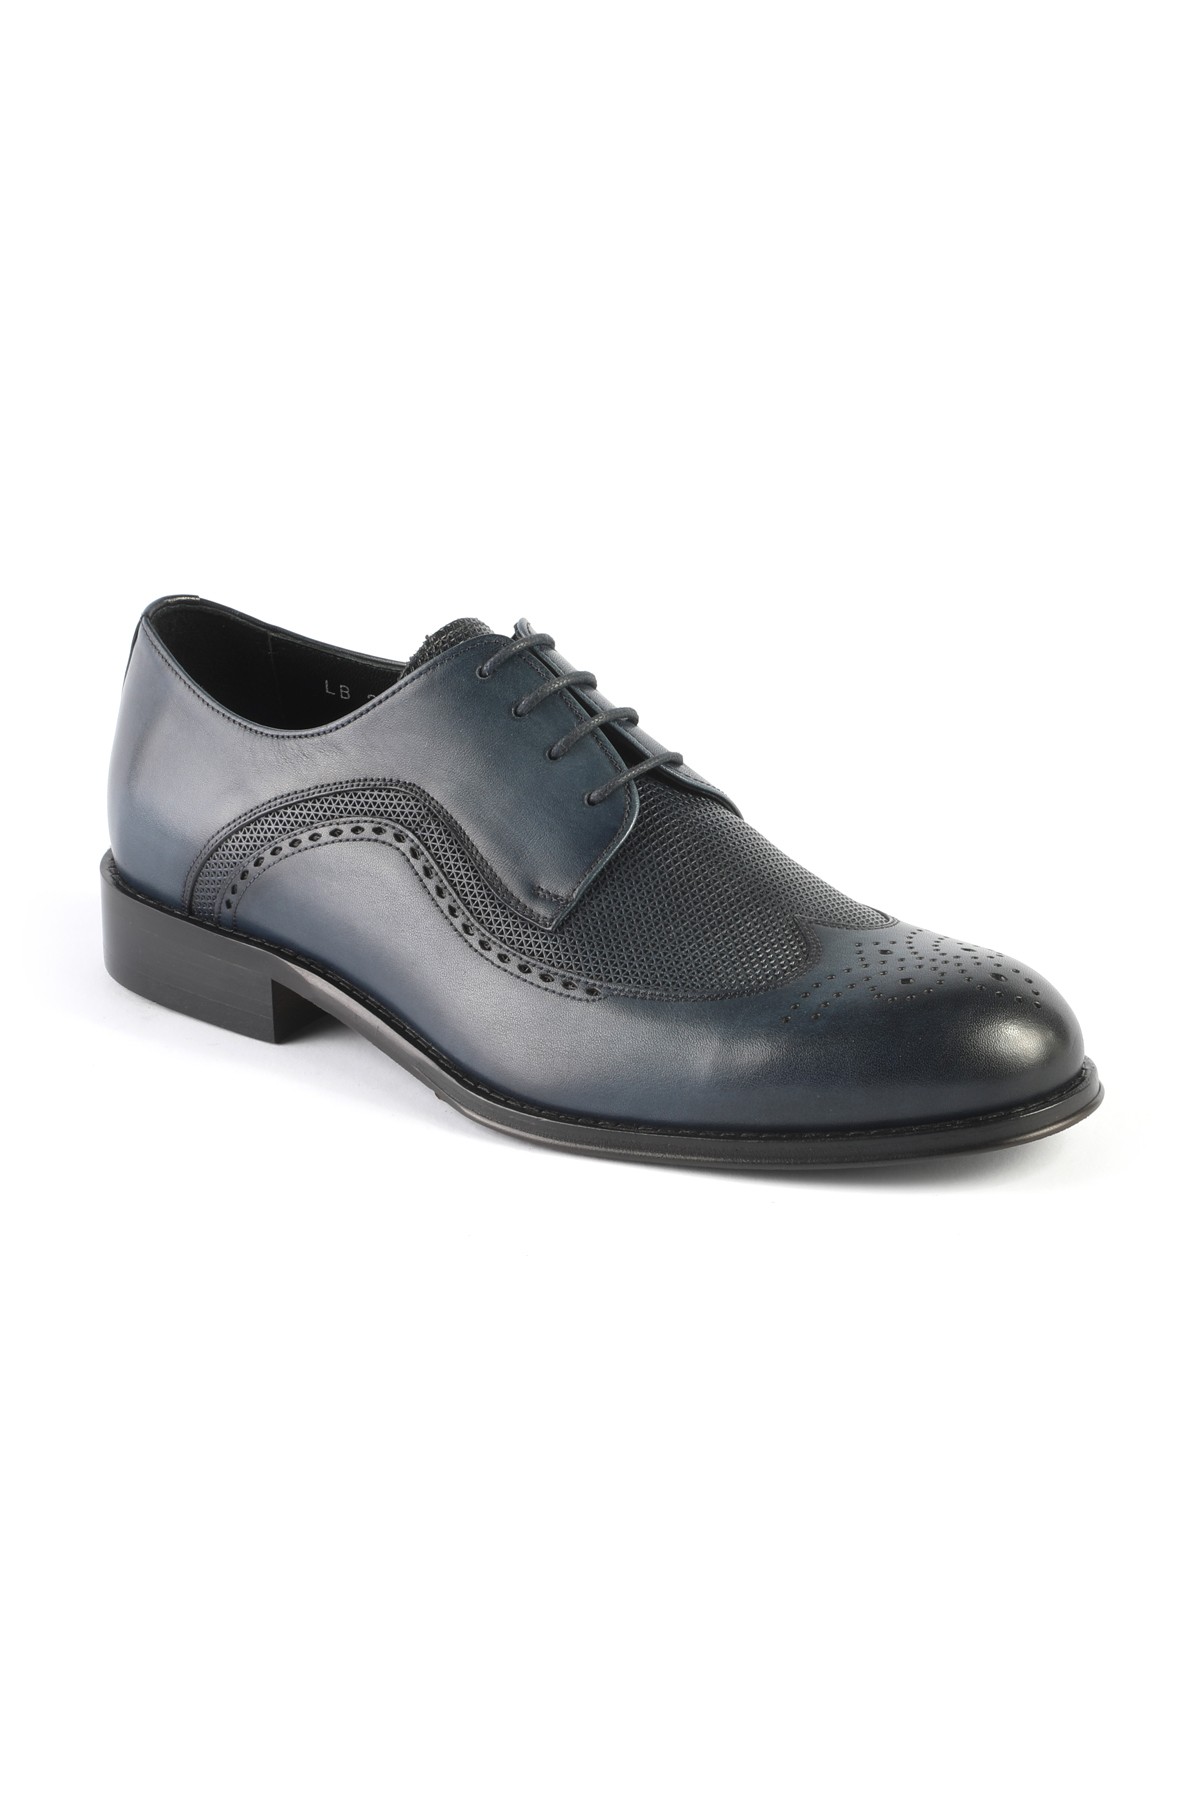 Libero 2873 Klasik Erkek Ayakkabı